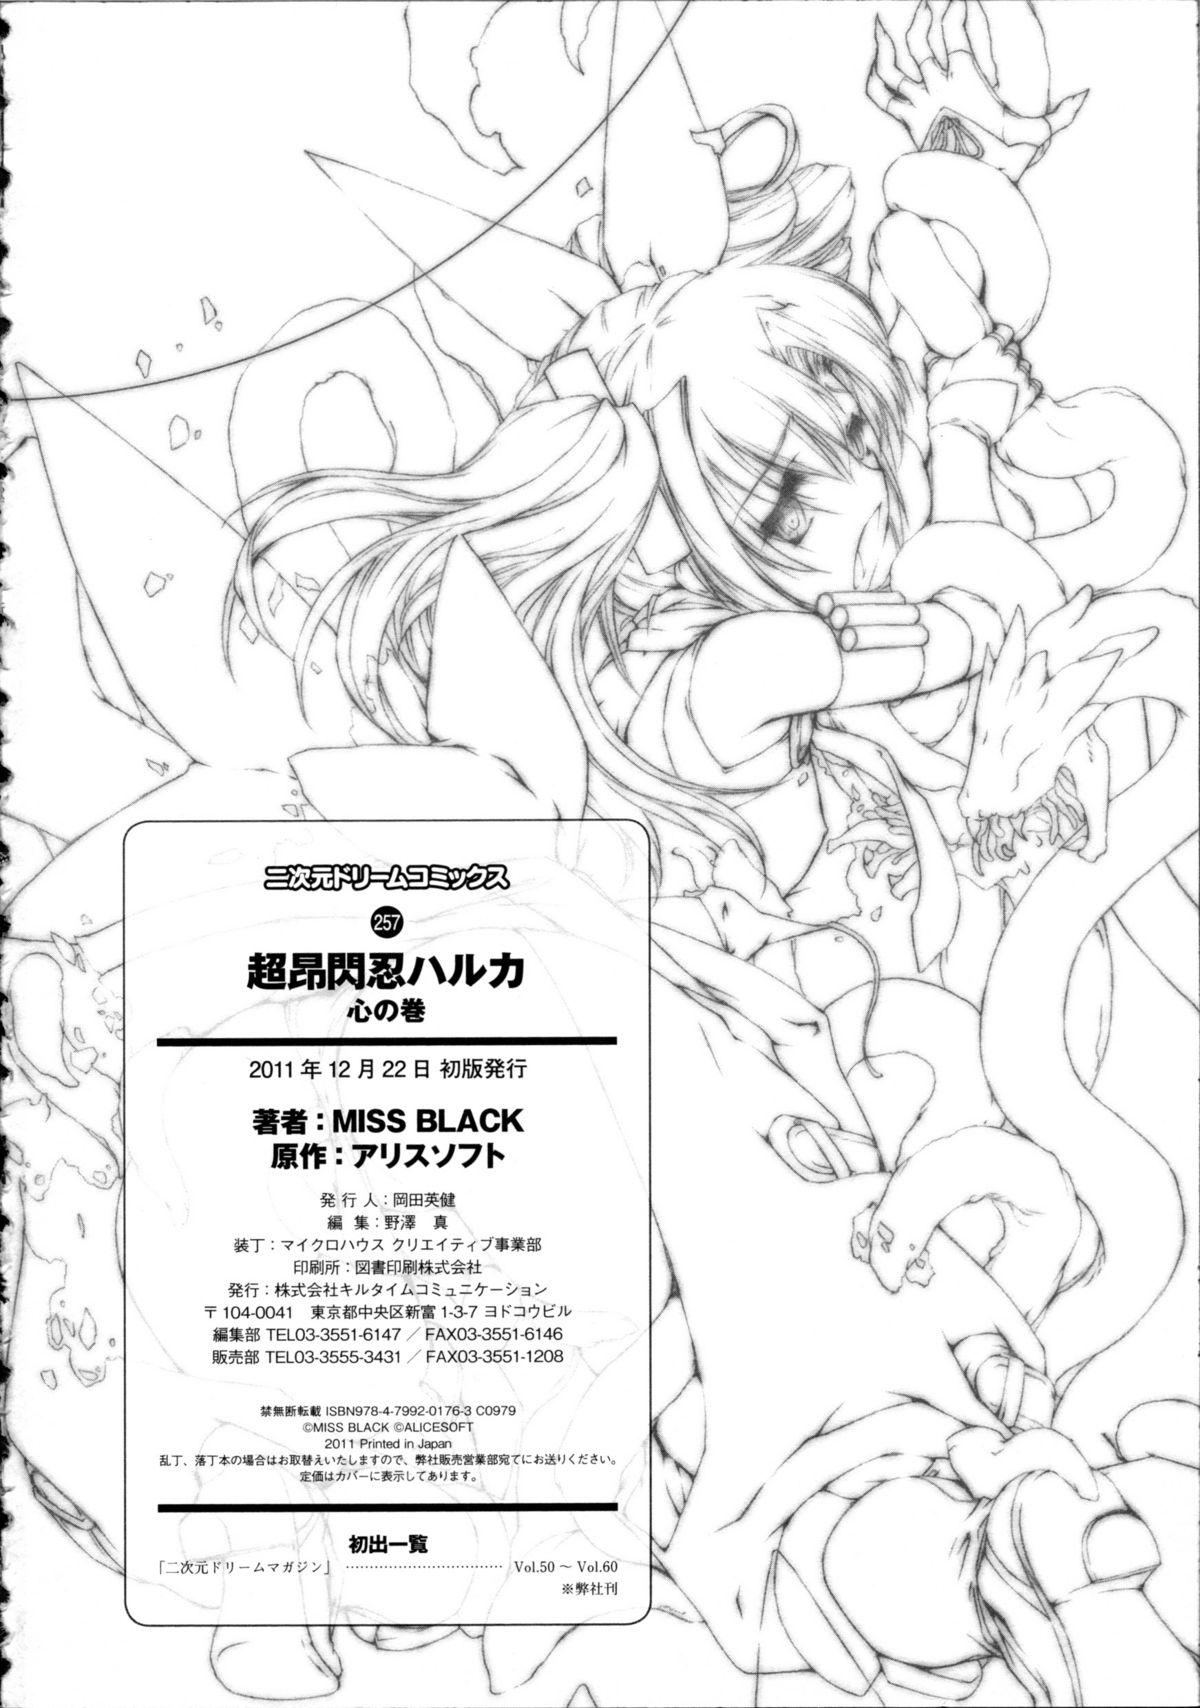 Butt Fuck Choukou Sennin Haruka Kokoro no Maki - Beat blades haruka Pretty - Page 243